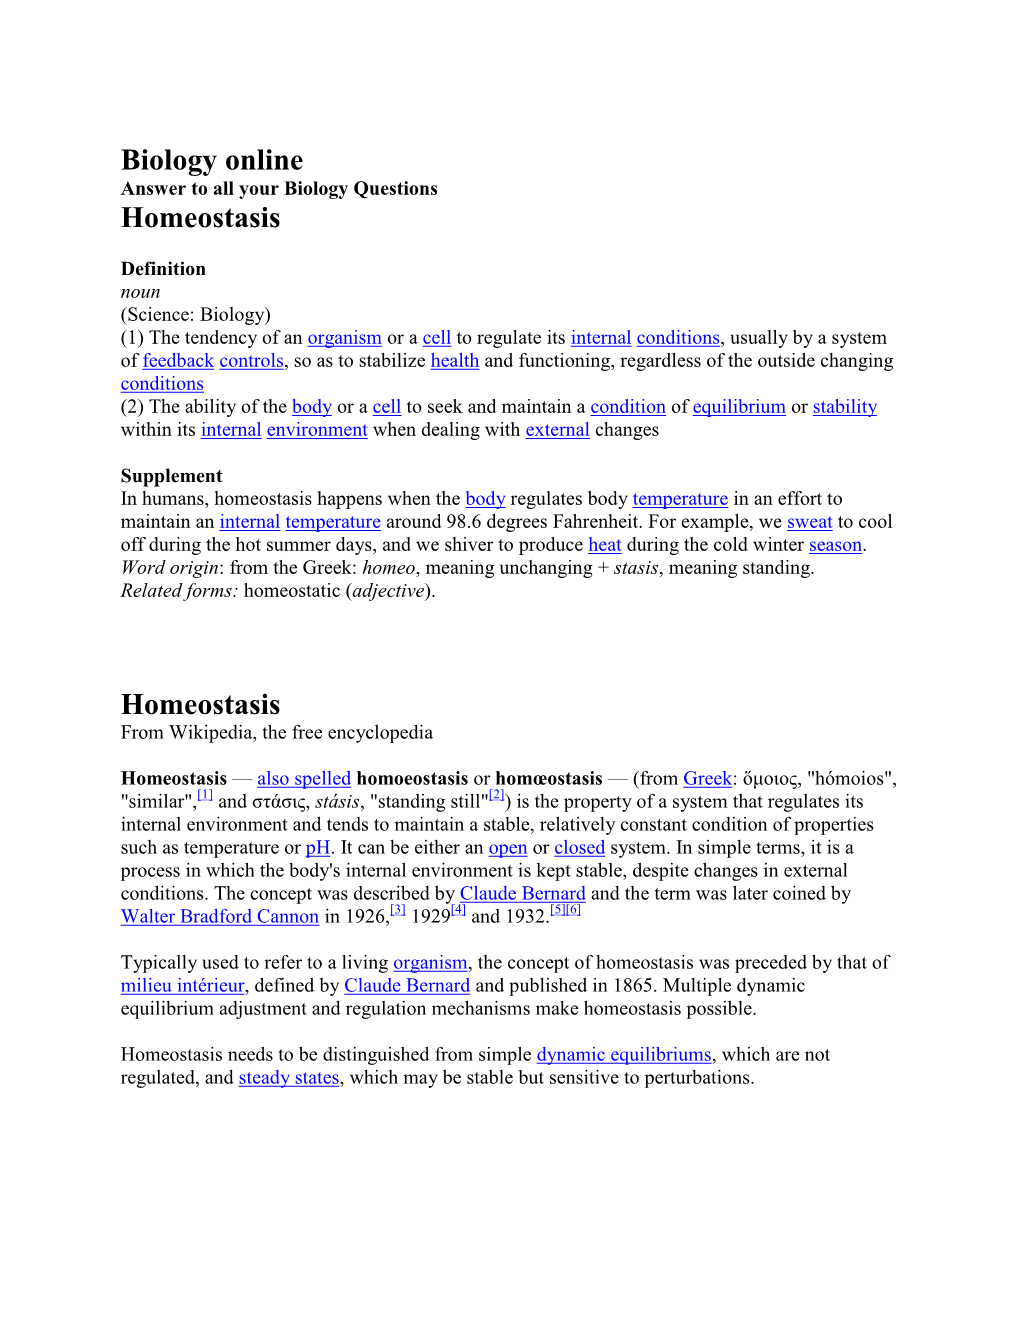 Biology Online Homeostasis Homeostasis